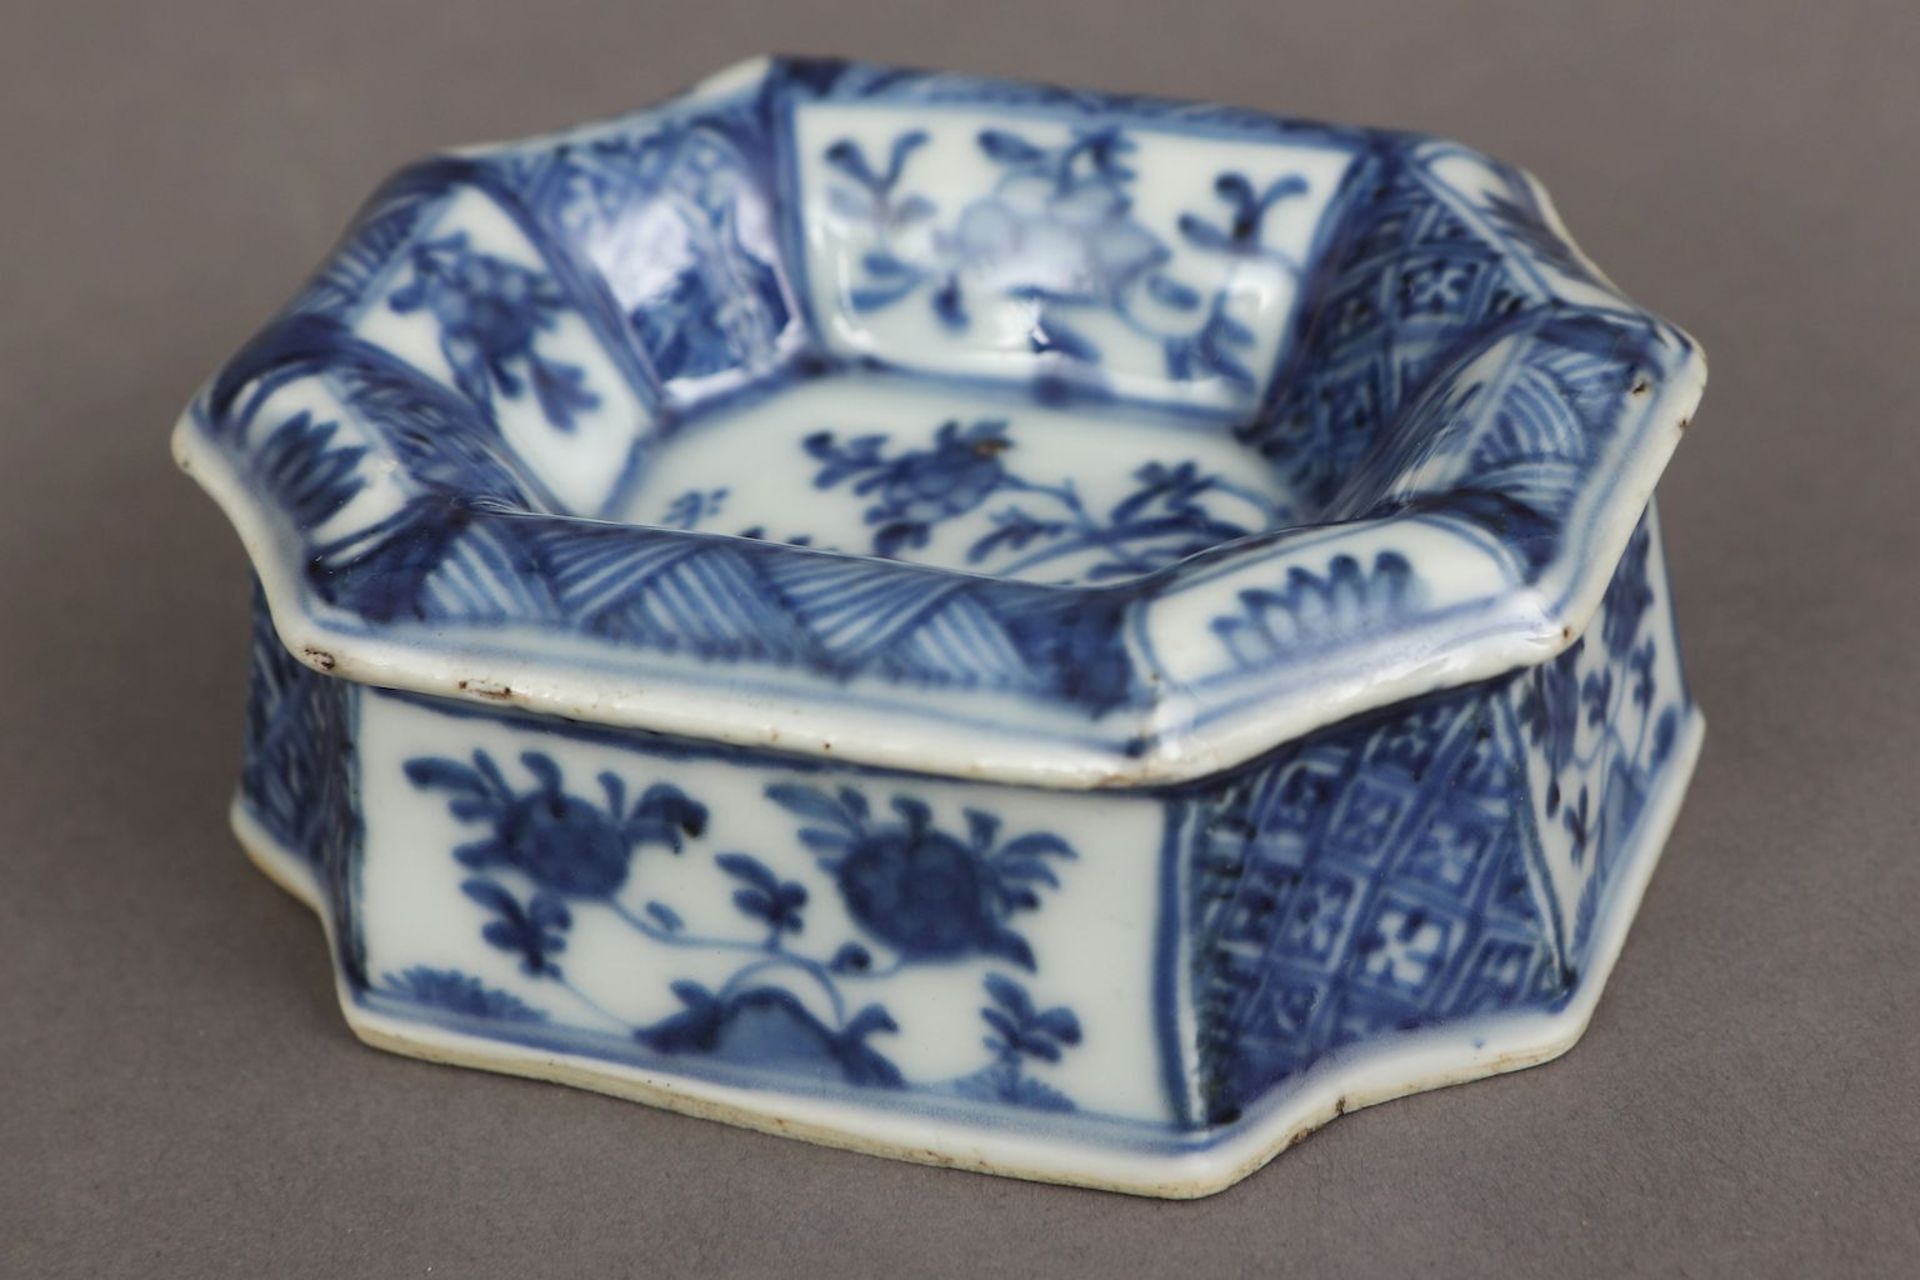 2 chinesische Porzellane mit Blaumalerei - Bild 6 aus 7